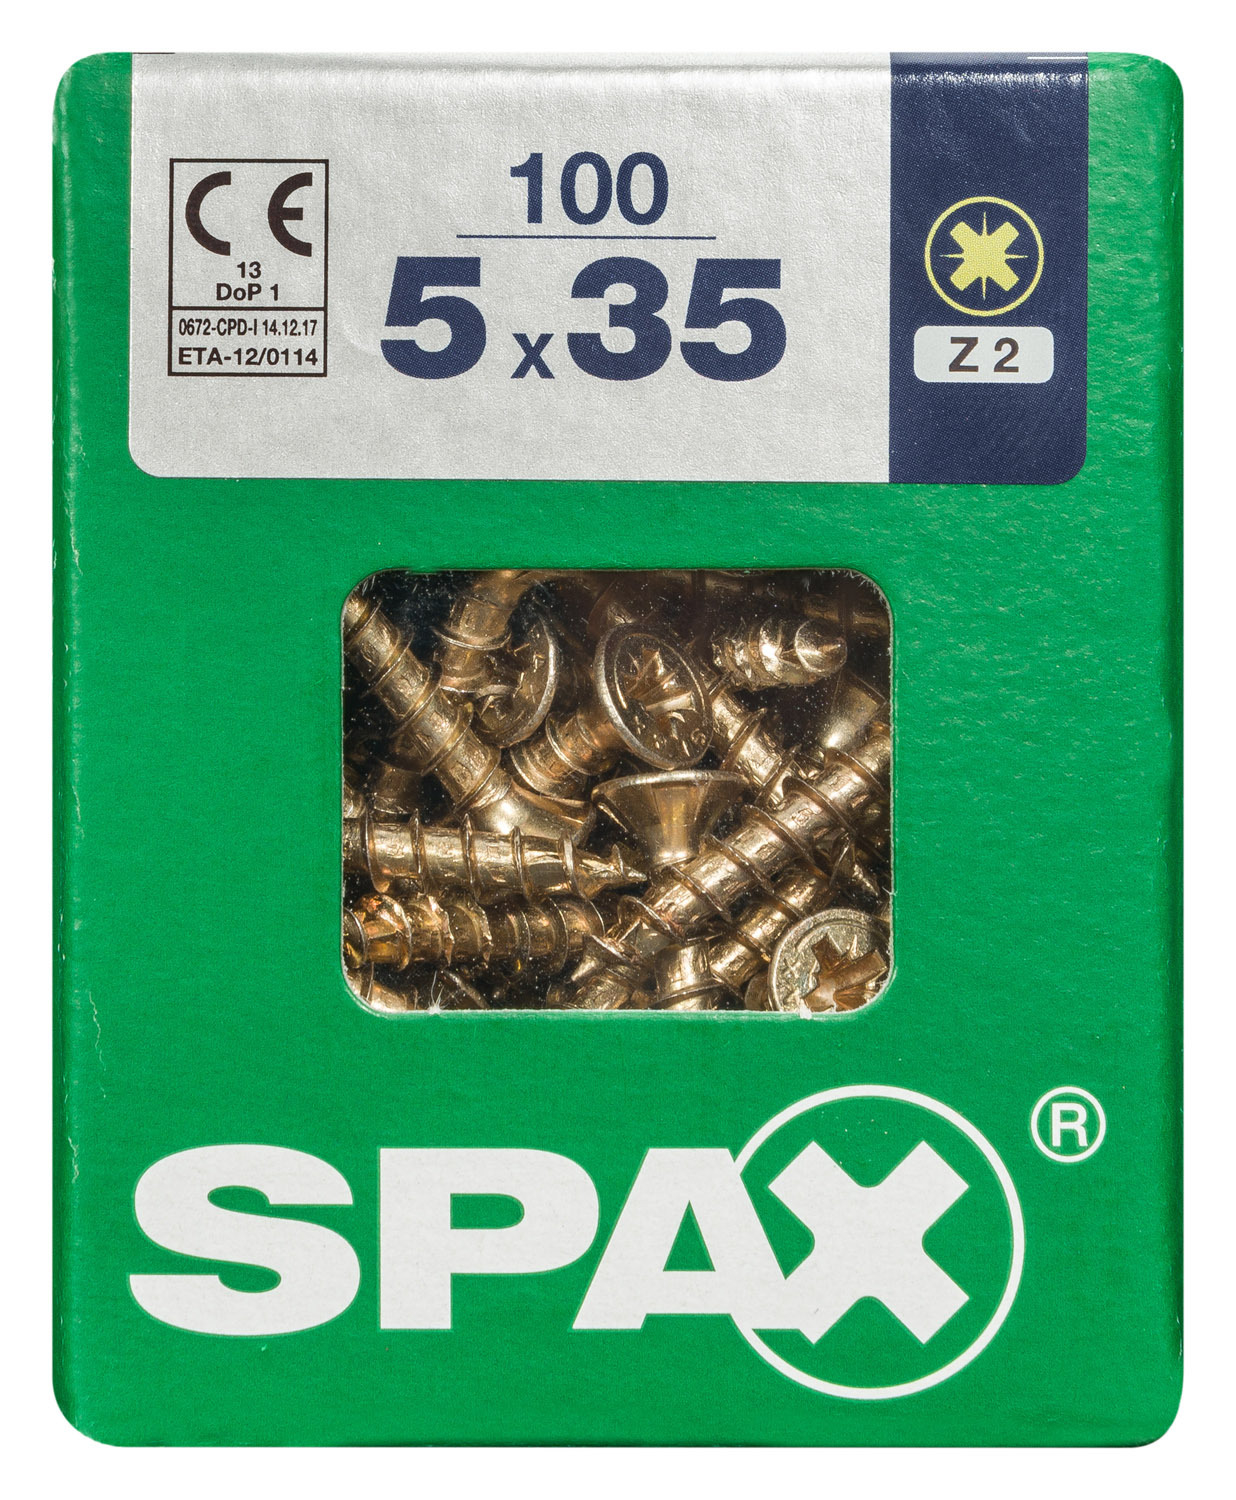 SPAX INTERNATIONAL GMBH & CO. KG - ENNEP Universalschrauben gelb vz VG 5,0x35 mm SeKo Pozi Pack L (100 Stück)